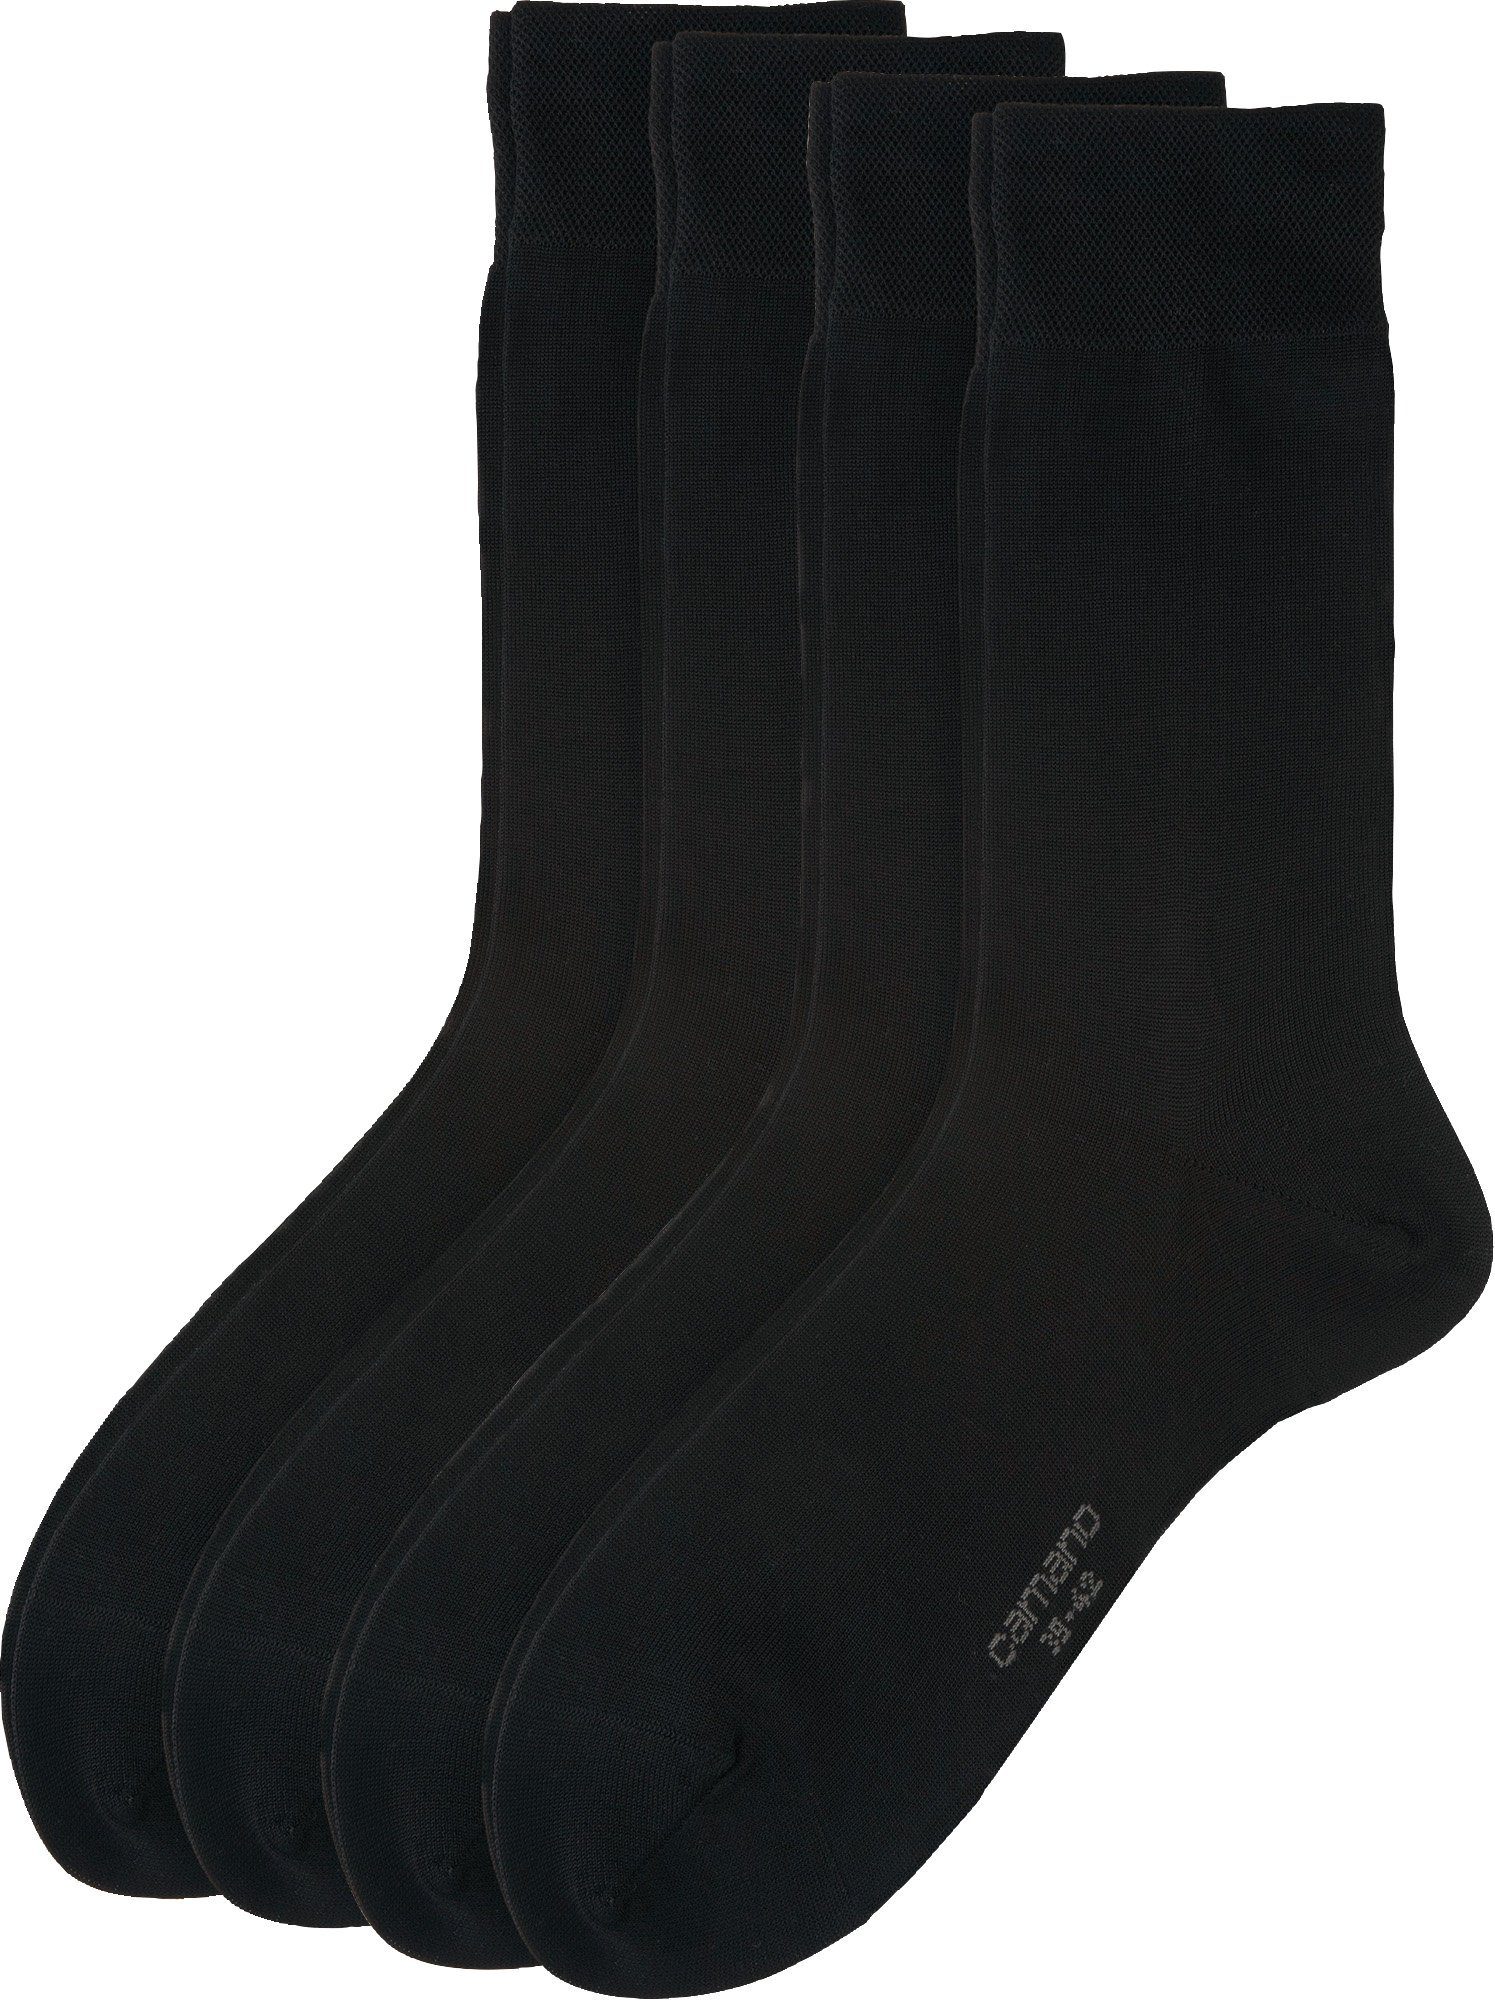 Camano Socken Herren Business-Socken 4 Paar Uni schwarz